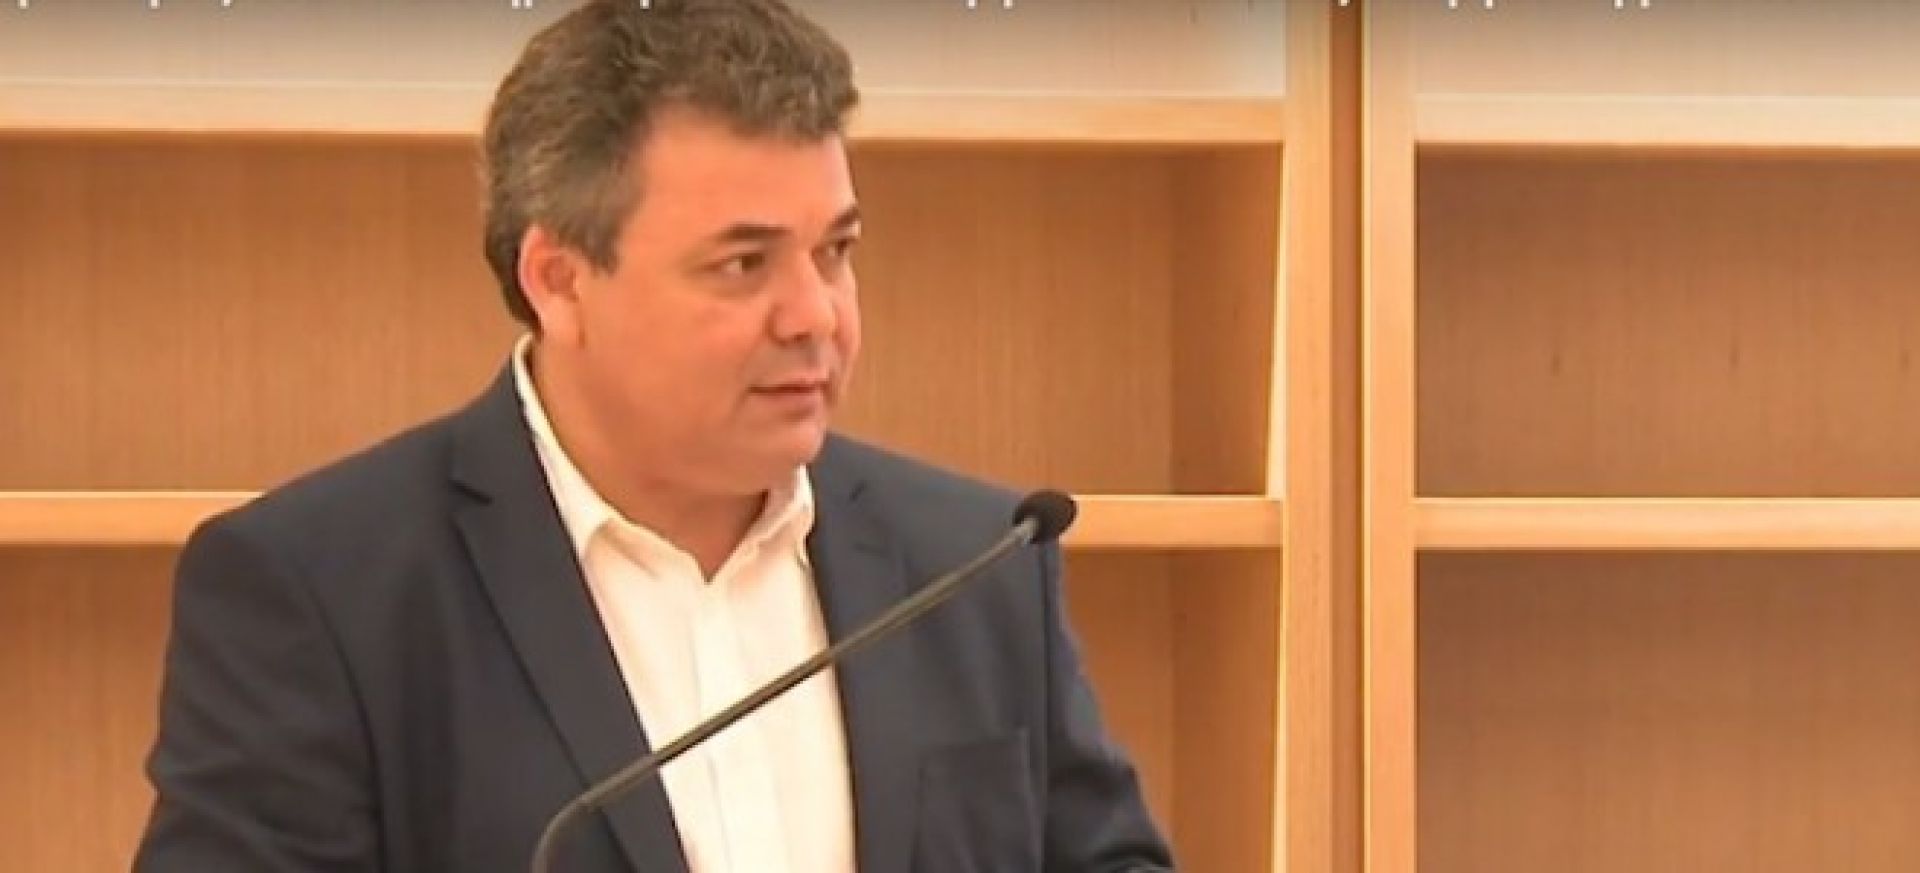 Παραιτείται ο Γενικός Γραμματέας του Υπουργείου Παιδείας Γιώργος Αγγελόπουλος